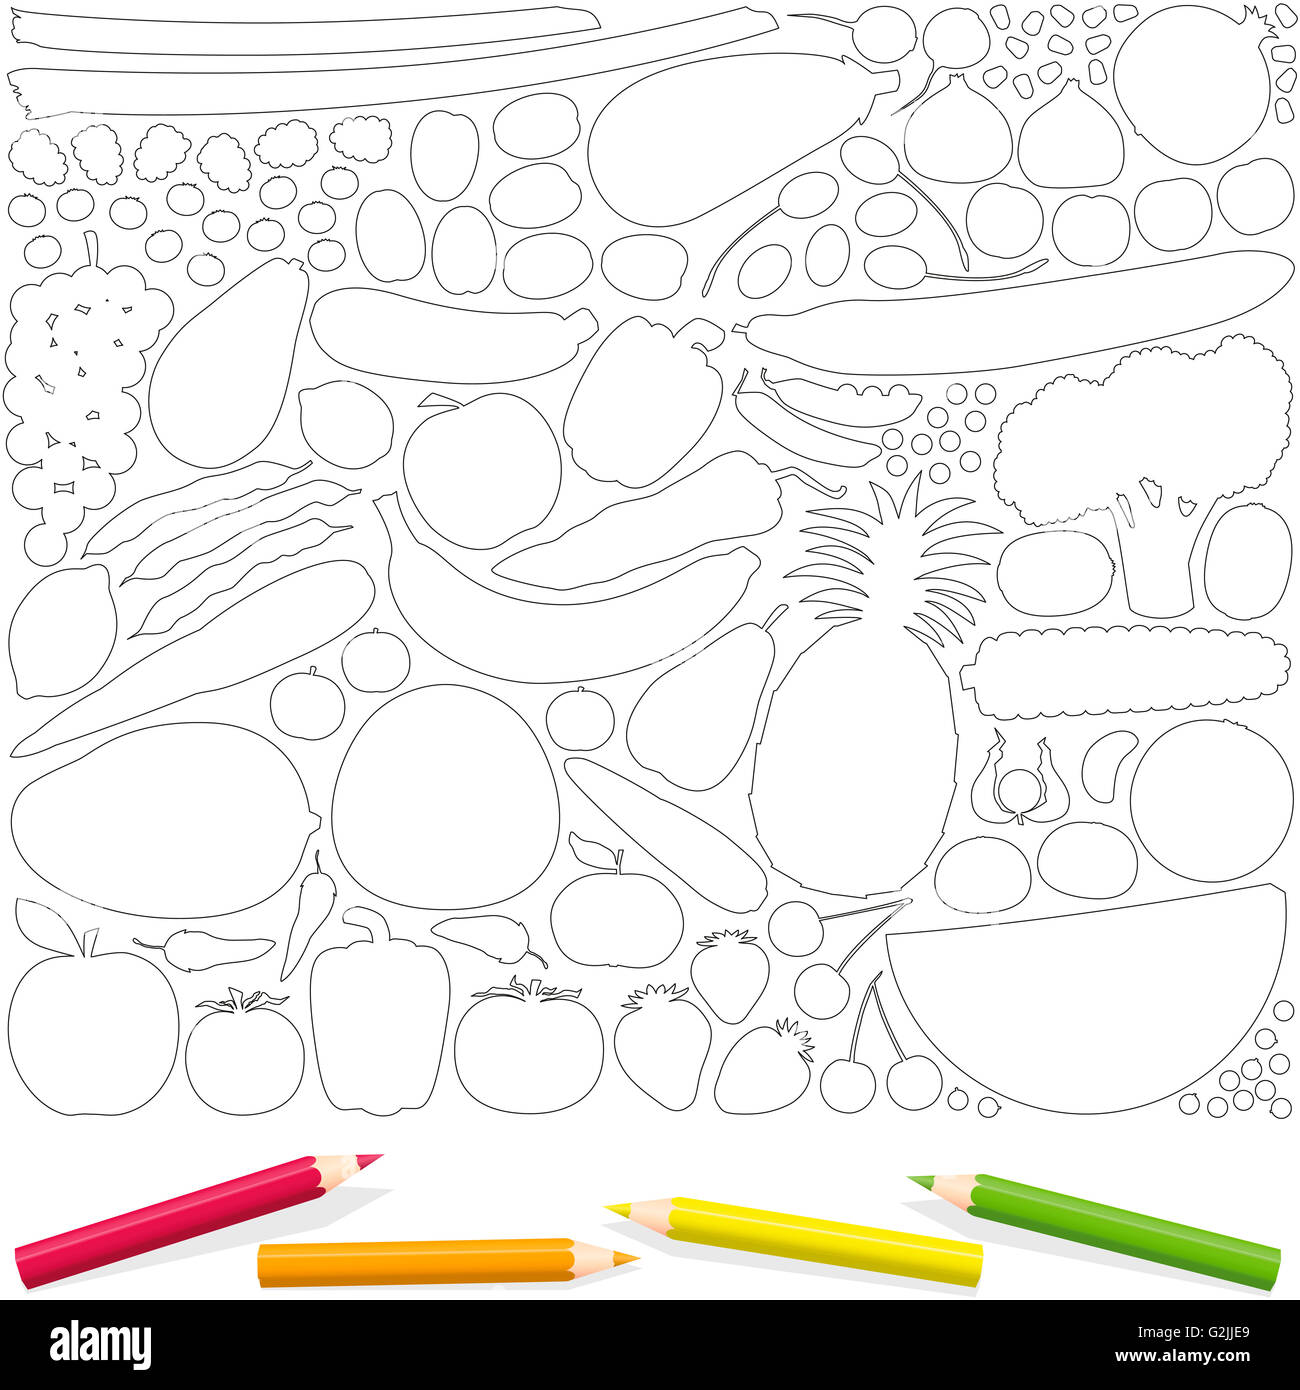 Obst und Gemüse zu skizzieren Coloring Seite mit vier Farbstiften. Vektor-Illustration auf weißem Hintergrund isoliert. Stockfoto